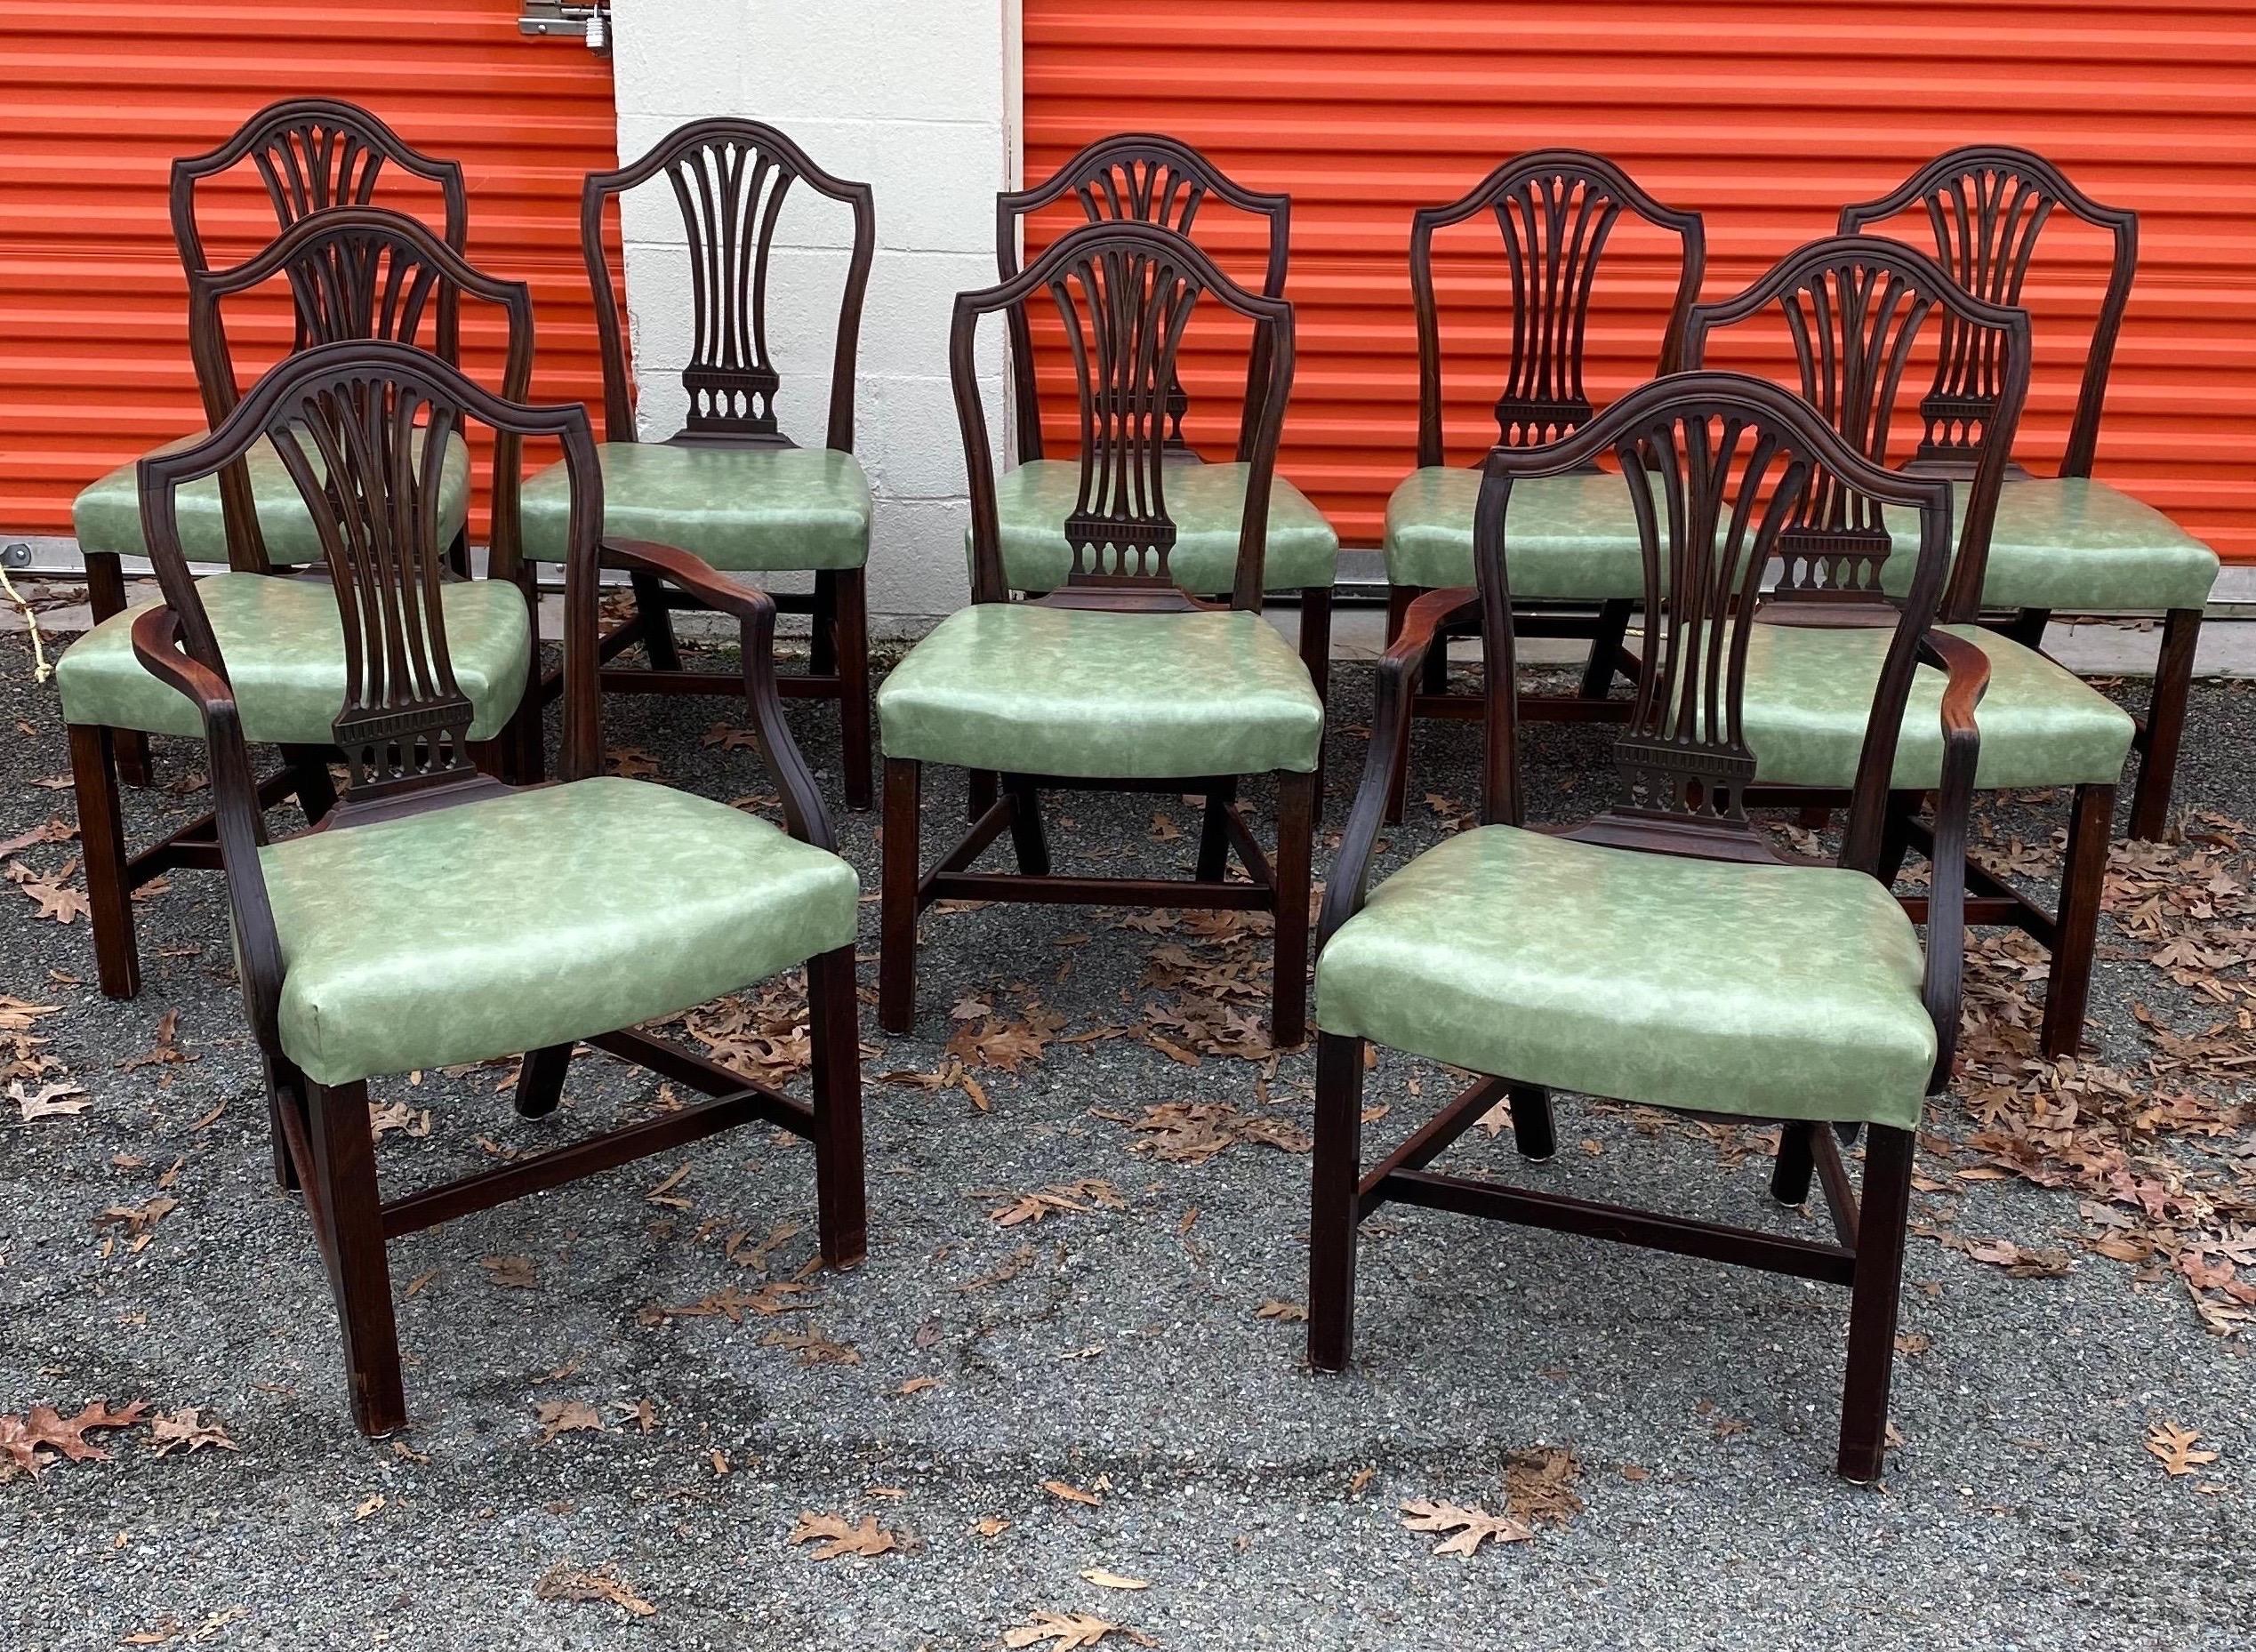 Toller Satz von 10 englischen Mahagoni-Esszimmerstühlen aus dem 19. Jahrhundert mit hellgrünen Sitzen. Zwei Sessel, acht Beistellstühle. Gepolstert mit einem schönen hellgrünen Vinyl in gutem Zustand.